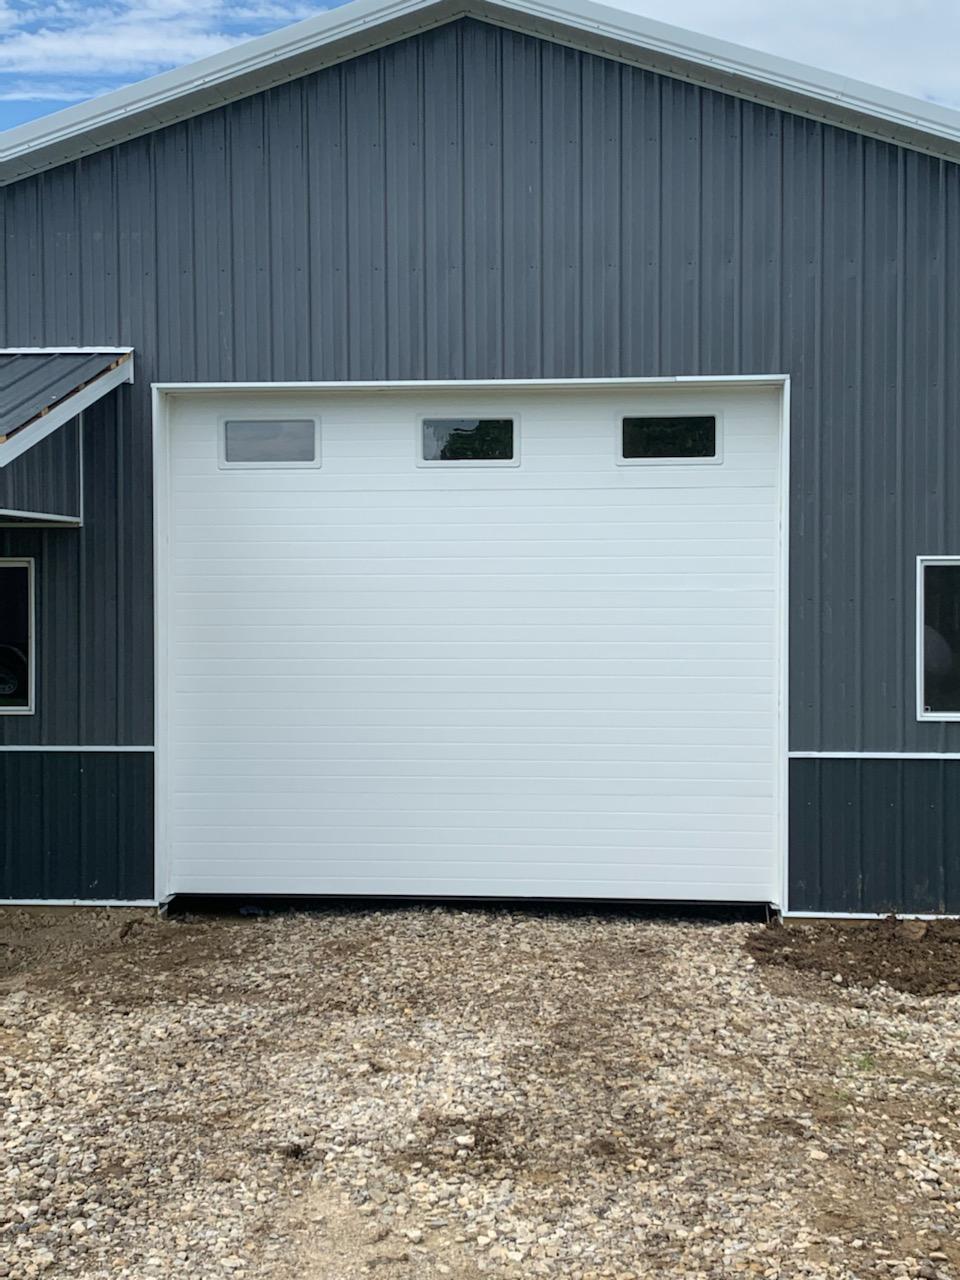 Commercial Garage Doors that Meet Your Needs